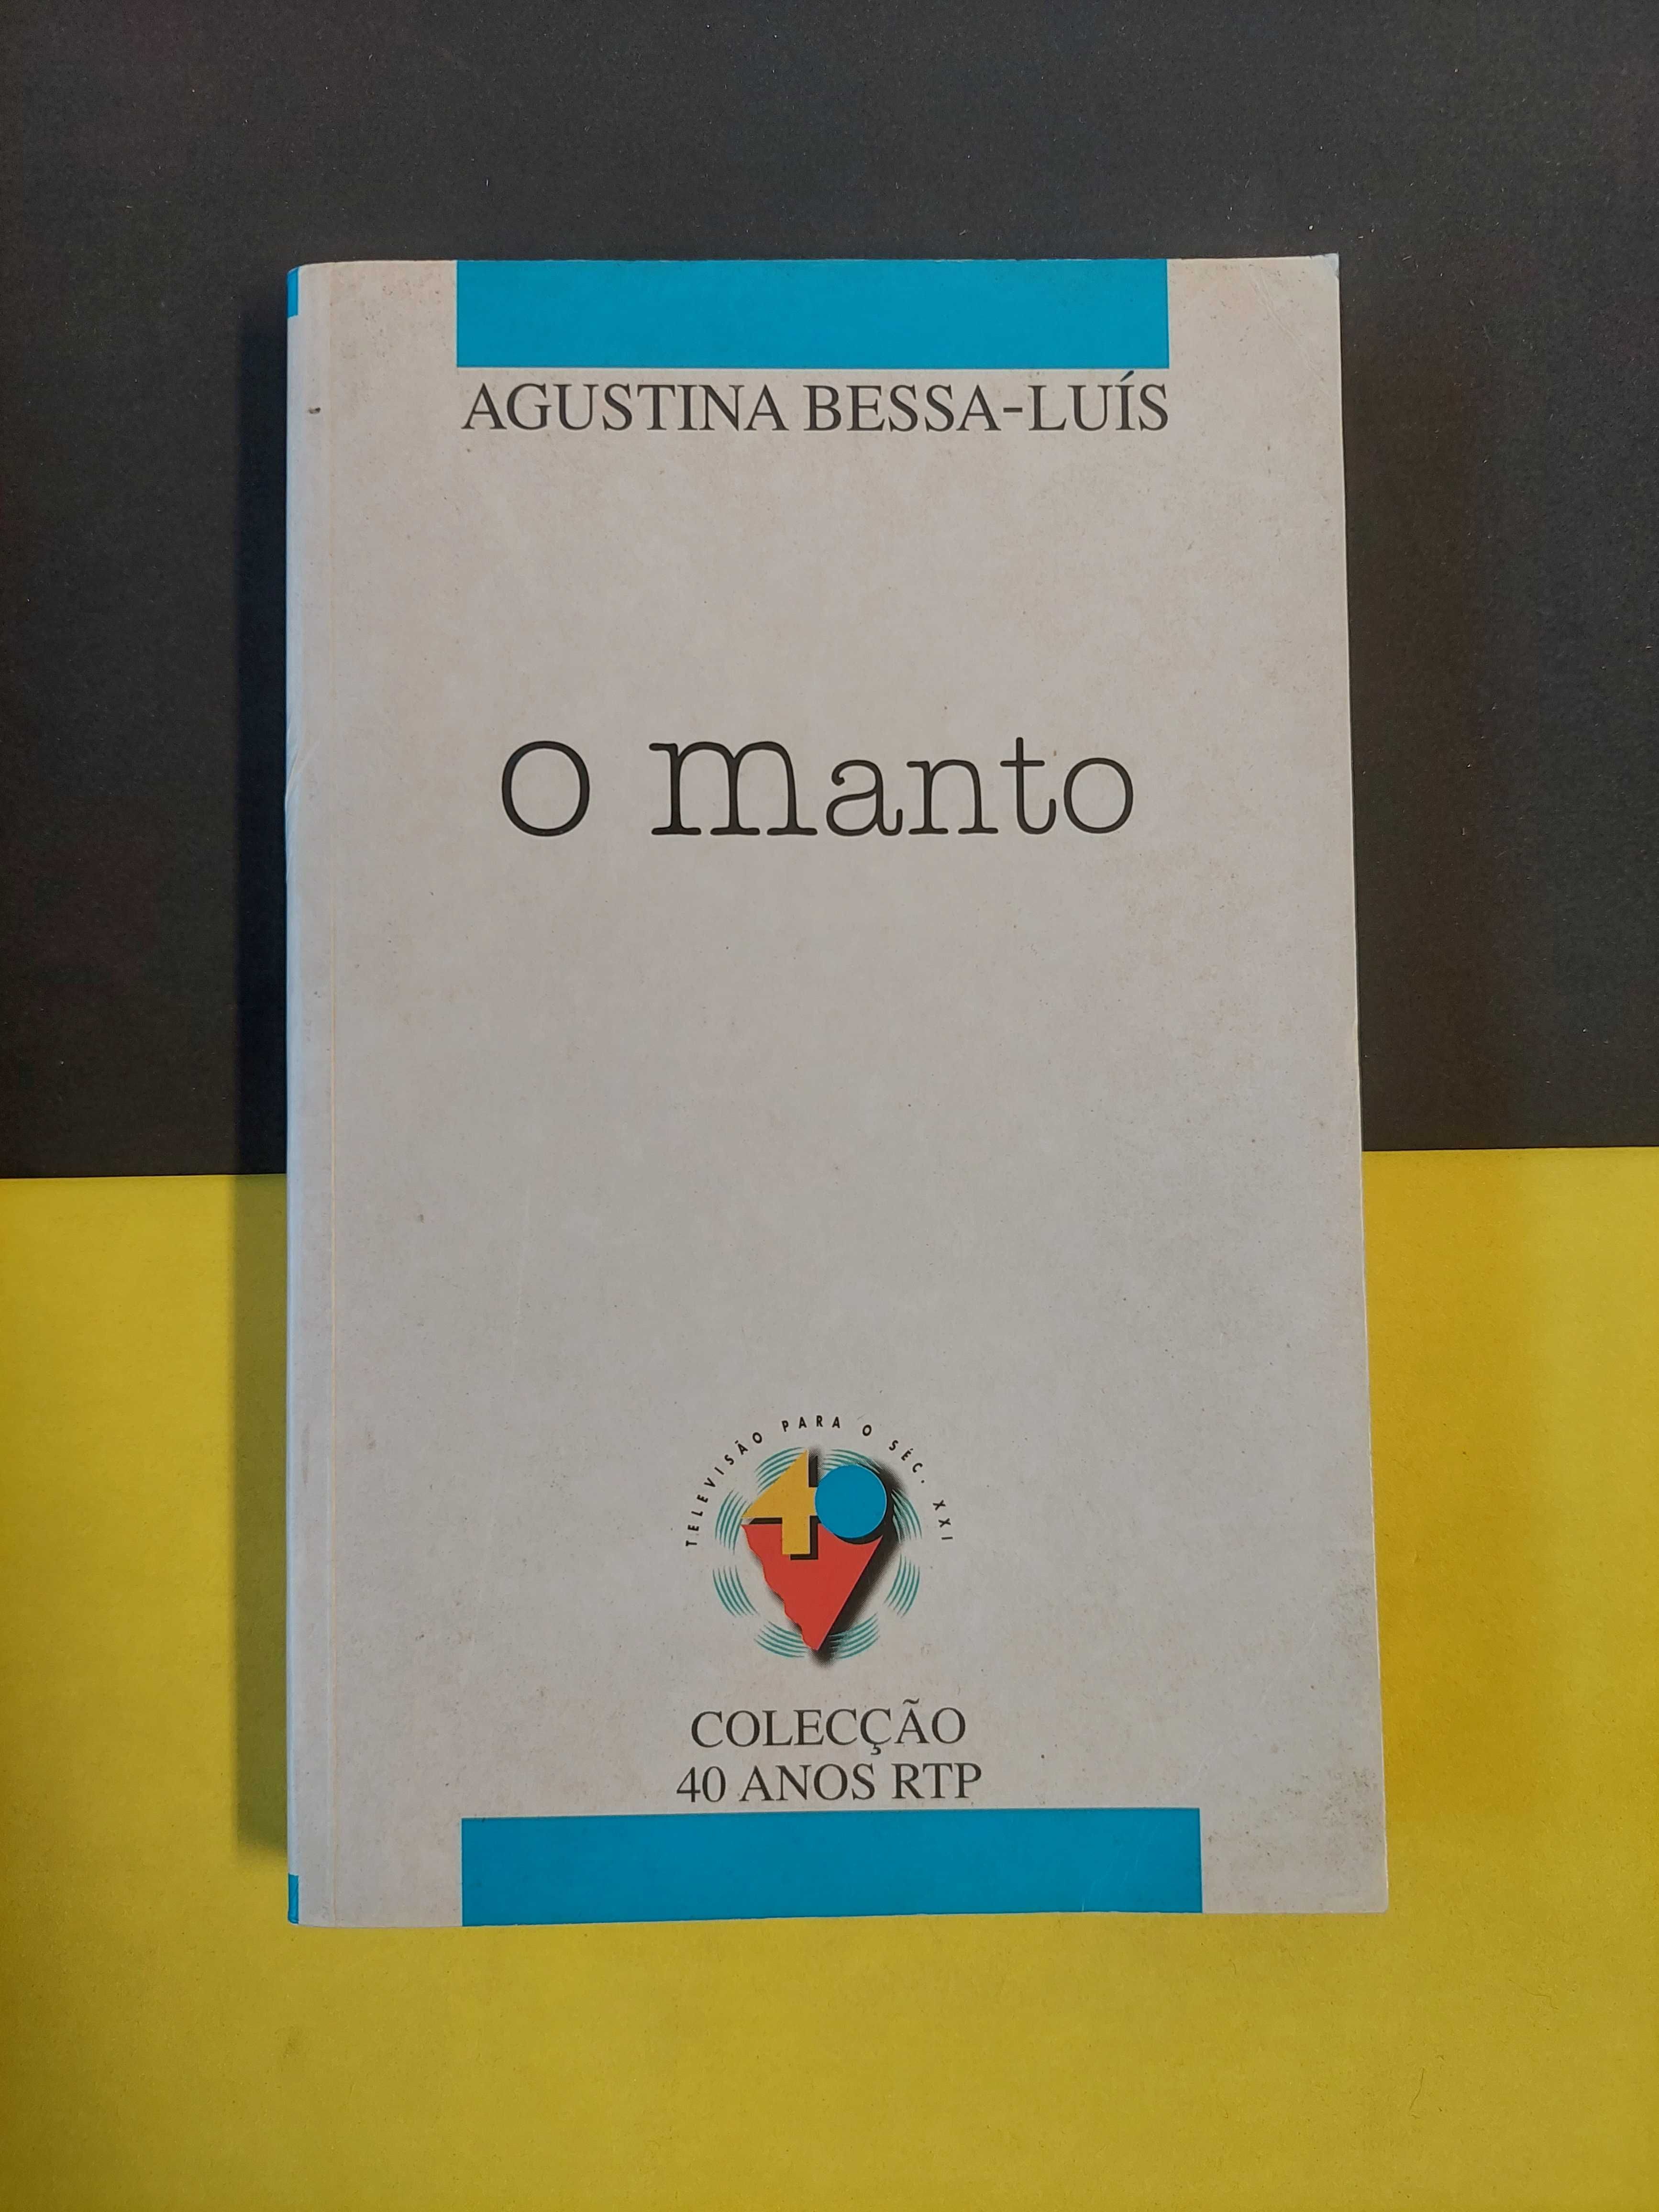 Agustina Bessa-Luís - O manto